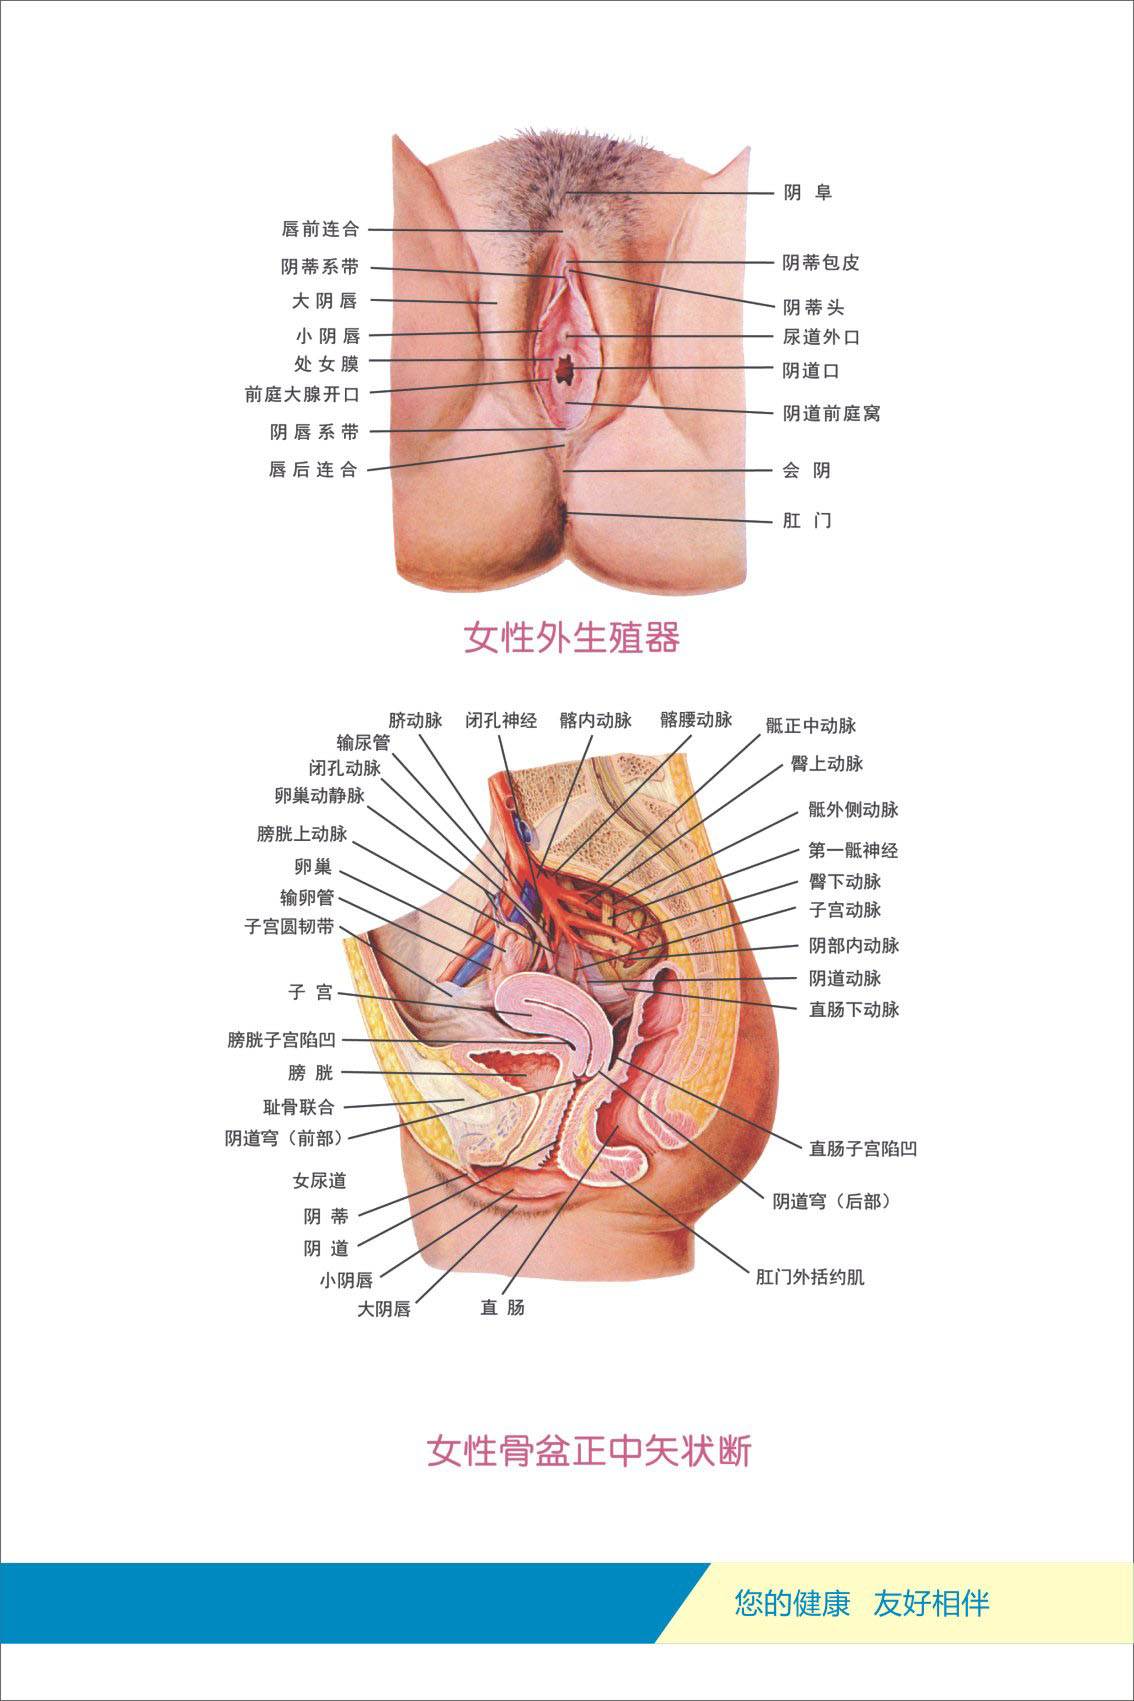 733海报印制写真121人体各部位器官剖解图3女性骨盆正中矢状断